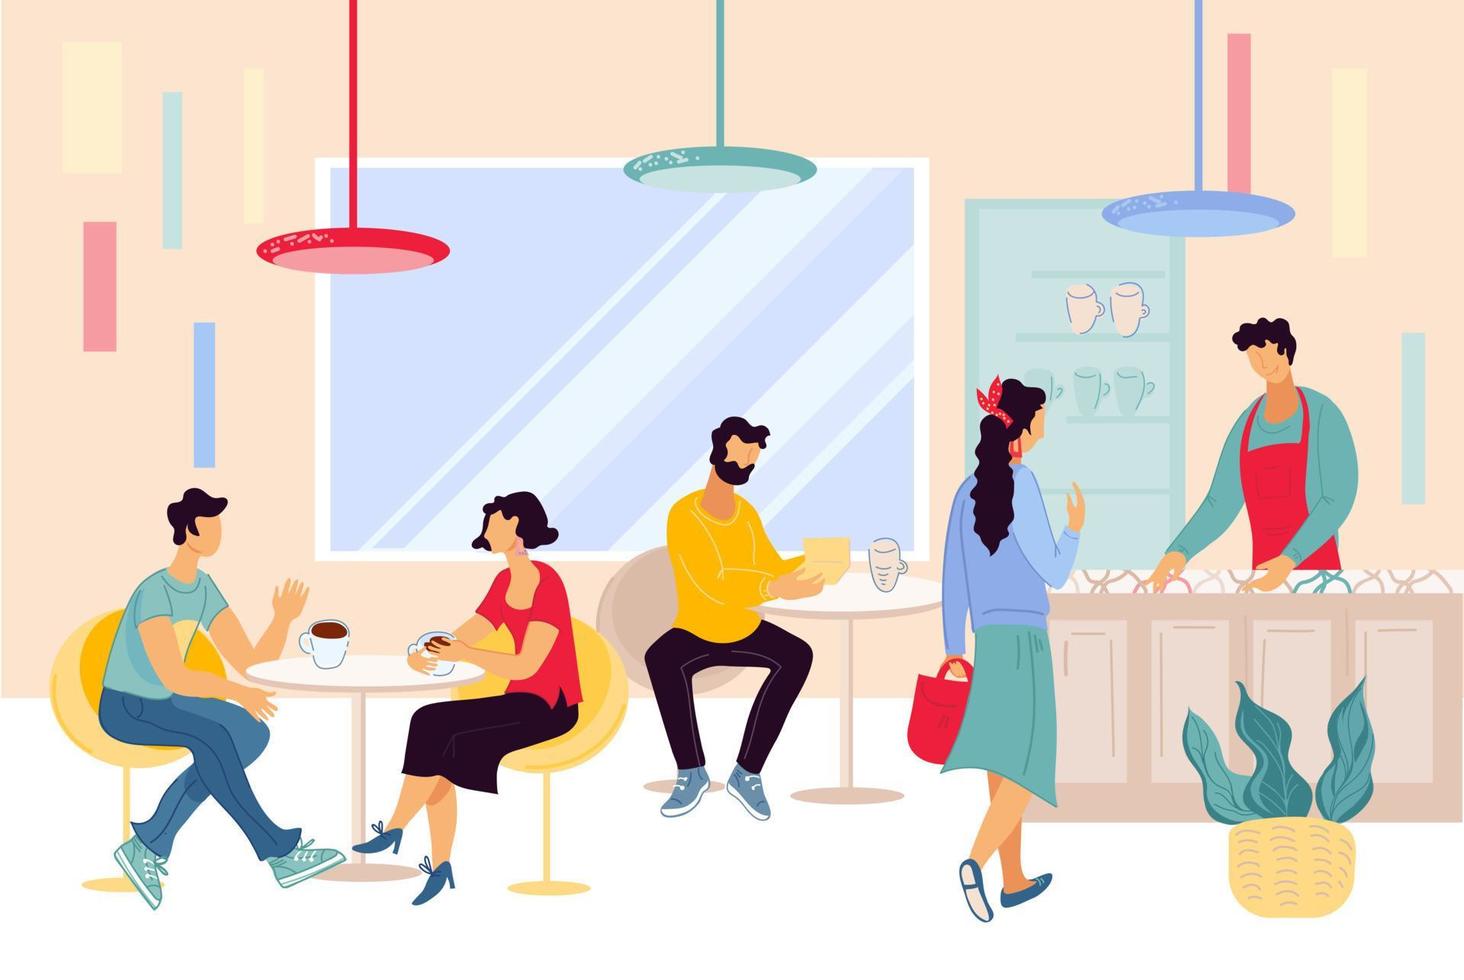 persone a pranzo al ristorante, bar. personaggio dei cartoni animati di uomini e donne seduto ai tavoli della caffetteria che comunica, fa l'ordine e il barista al bancone negli interni moderni del caffè. illustrazione vettoriale piatta.